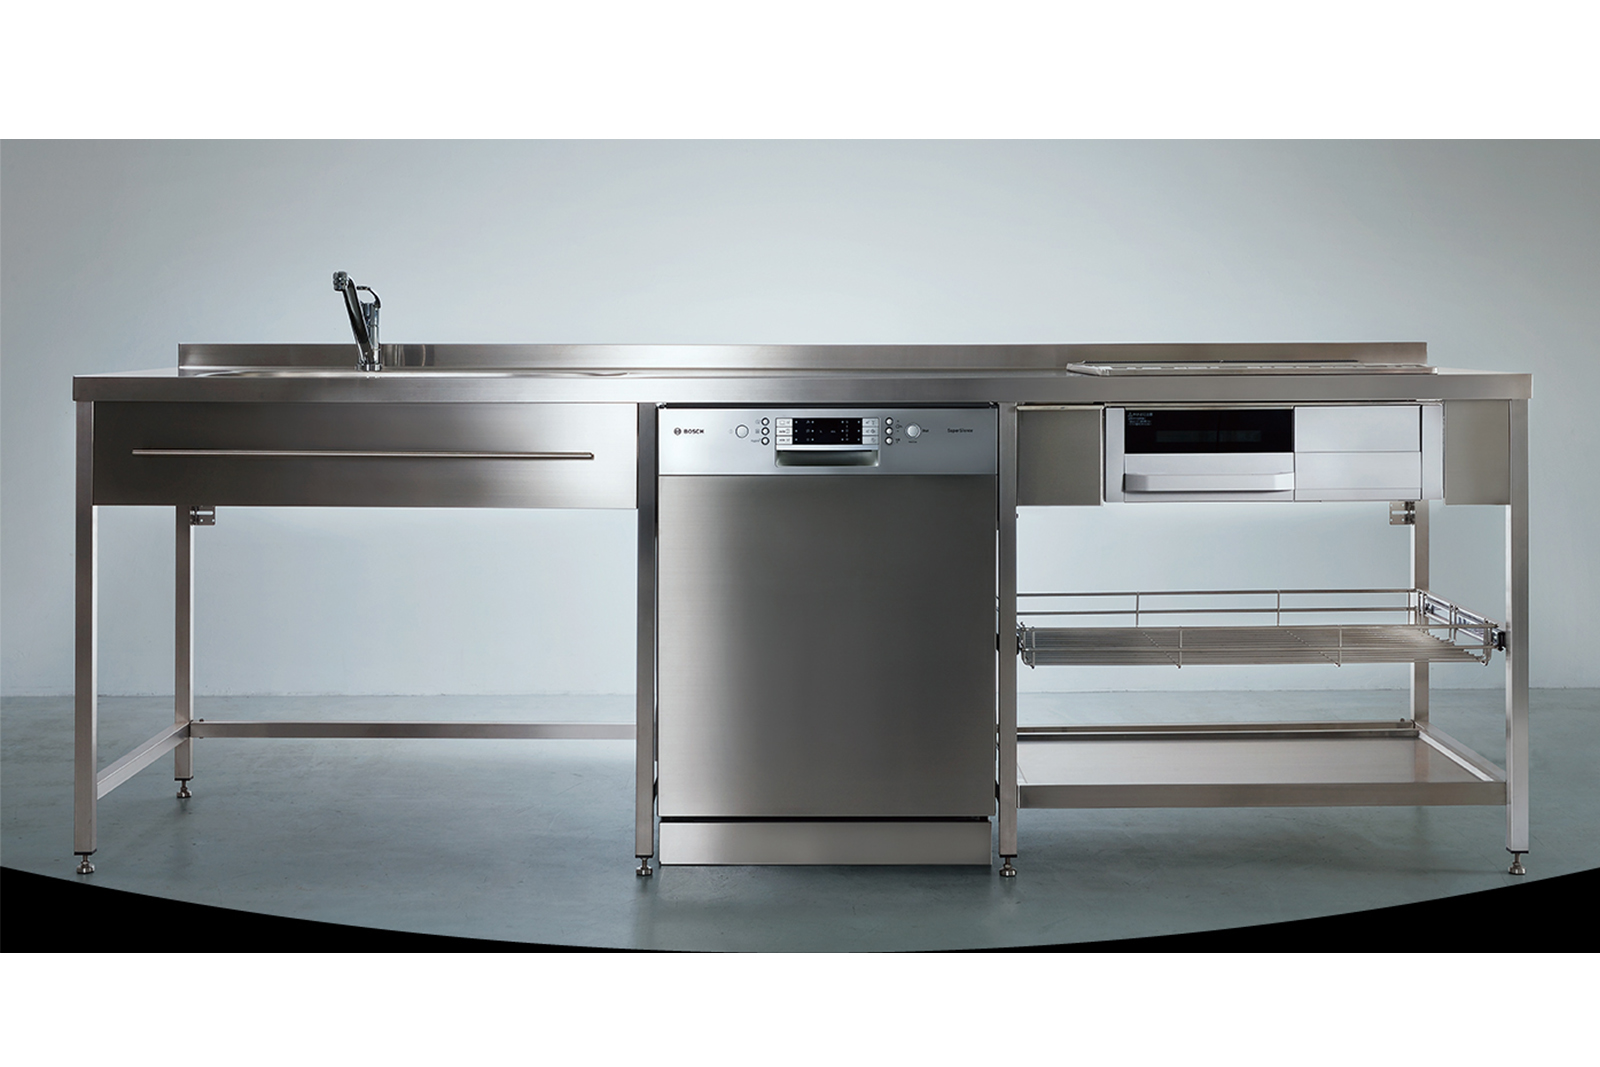 ステンレスフレームキッチン W2100×D650 KB-KC005-01-G078 中央はオプションのフロントオープン食洗機 W600（W2100・W2250・W2400はW450の食洗機のみ設置可能）※タオルバーは旧仕様のW800、現行はW490